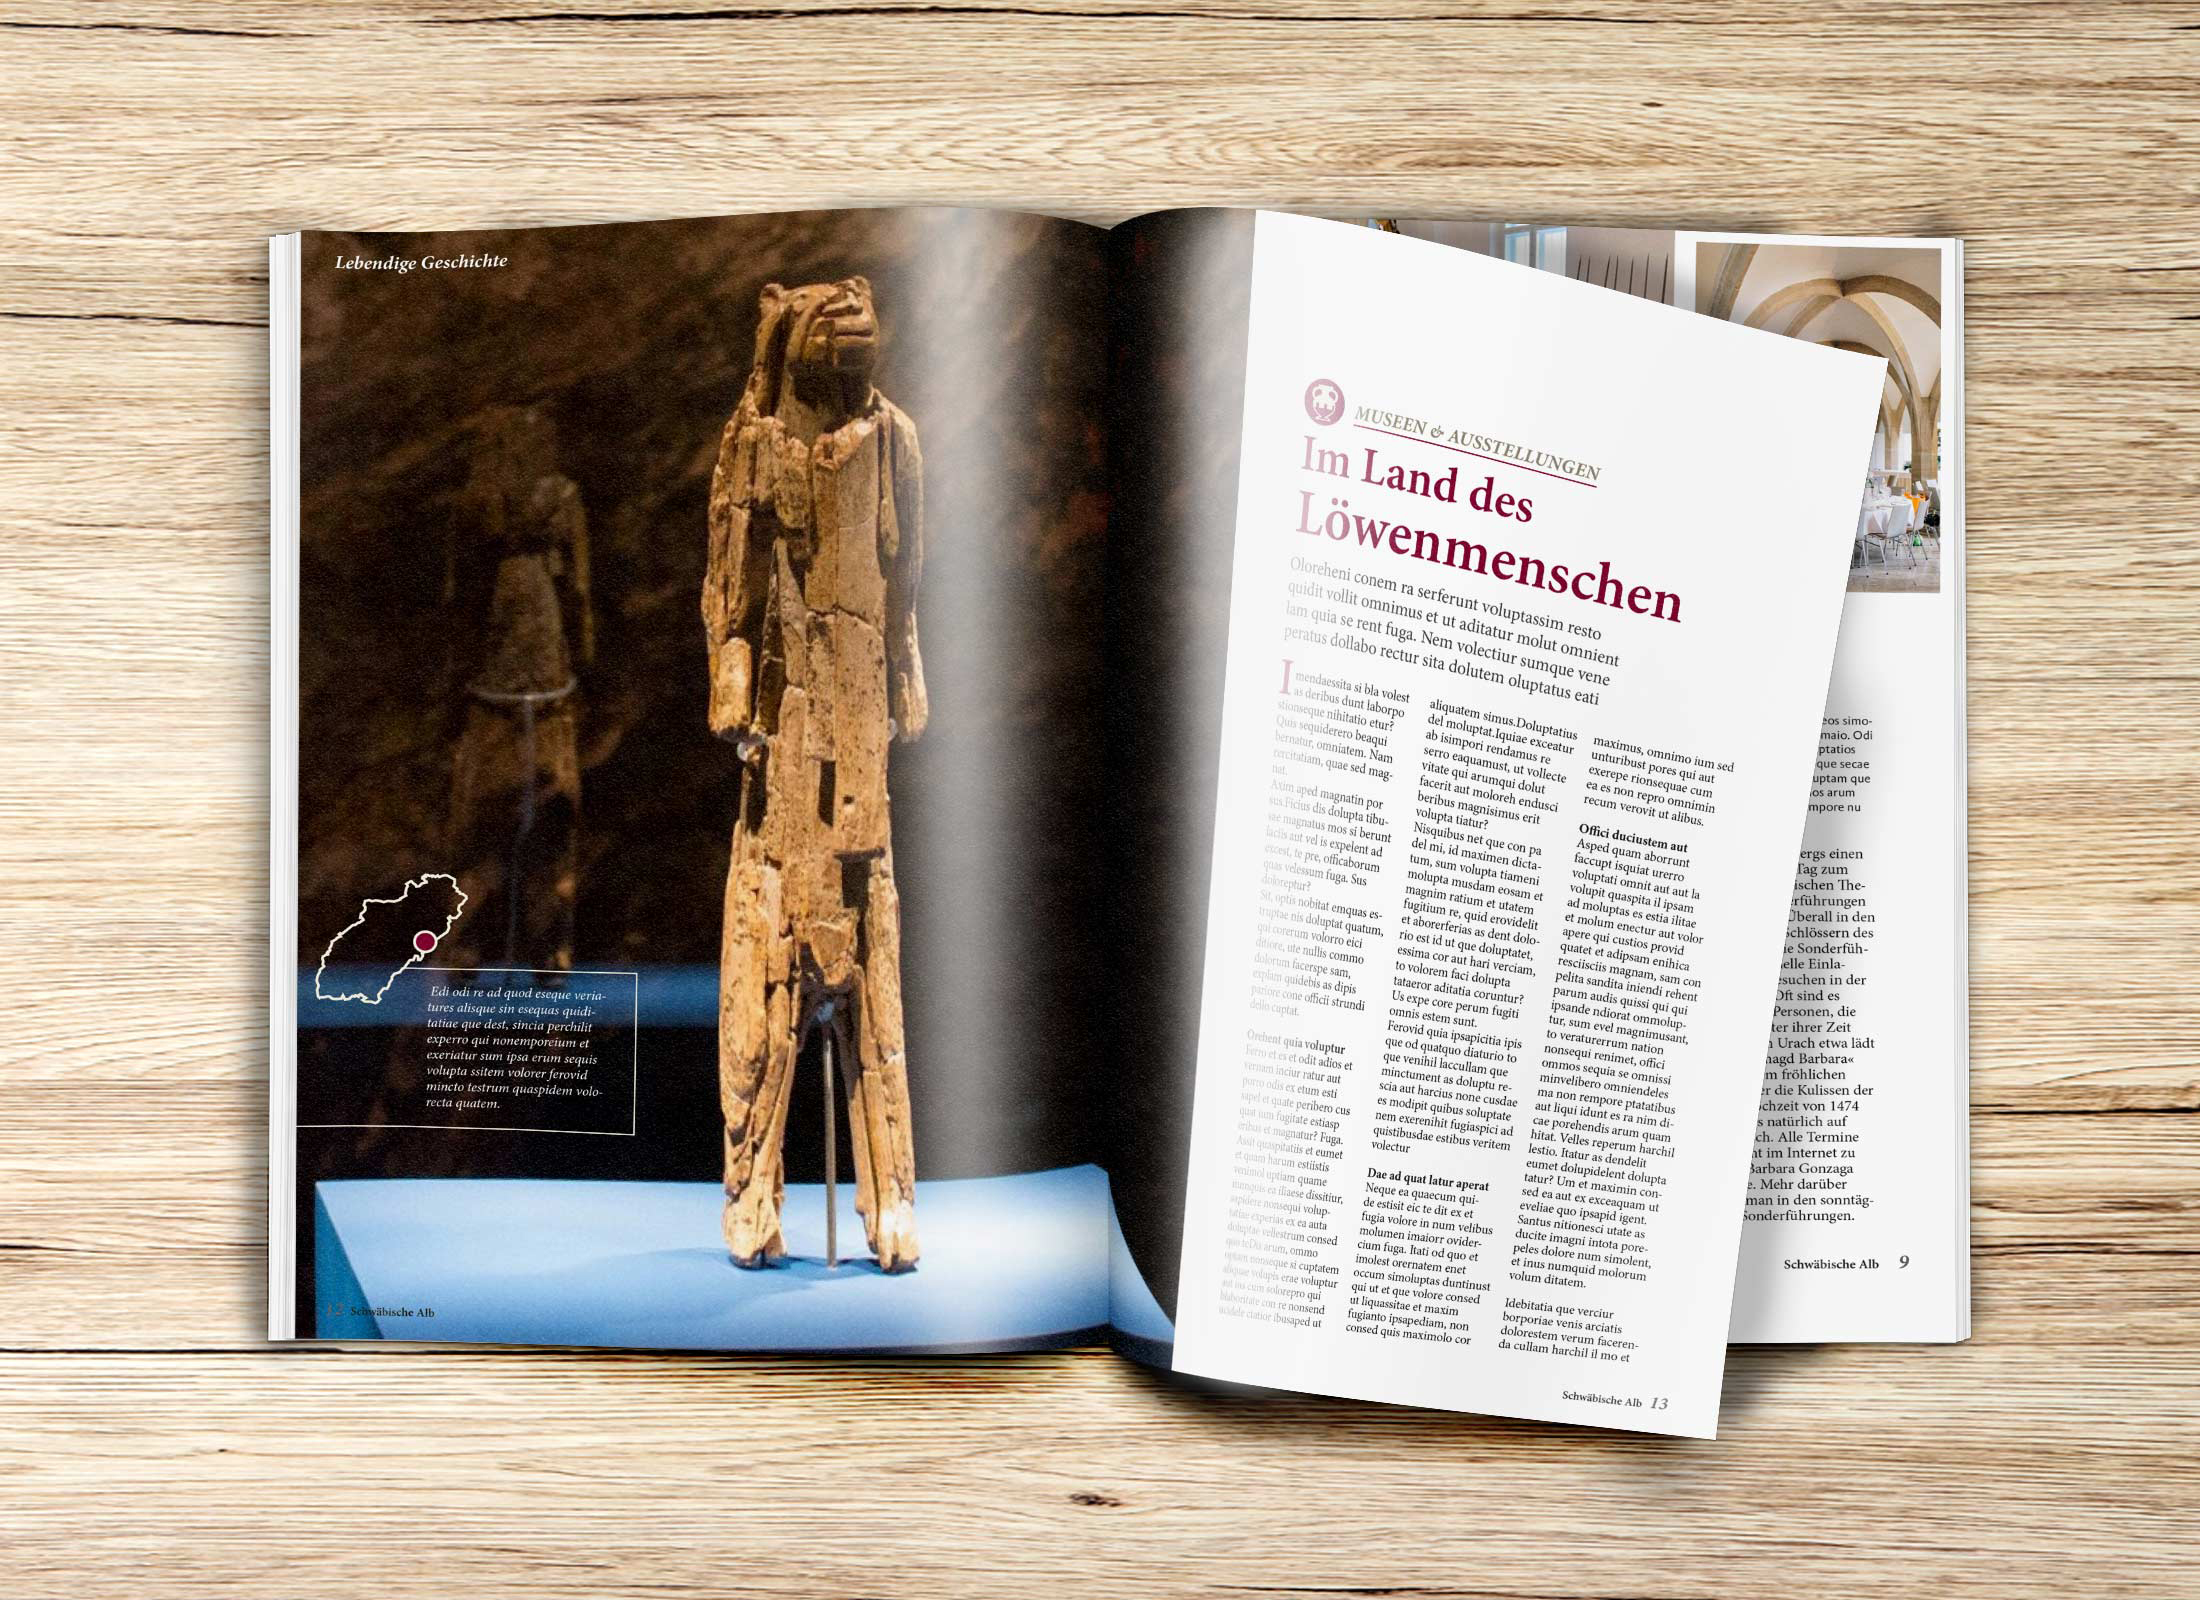 Aufgeschlagene Doppelseite mit redaktionellen Bericht über das Land des Löwenmenschen aus der Gästezeitung Schwaebische Alb